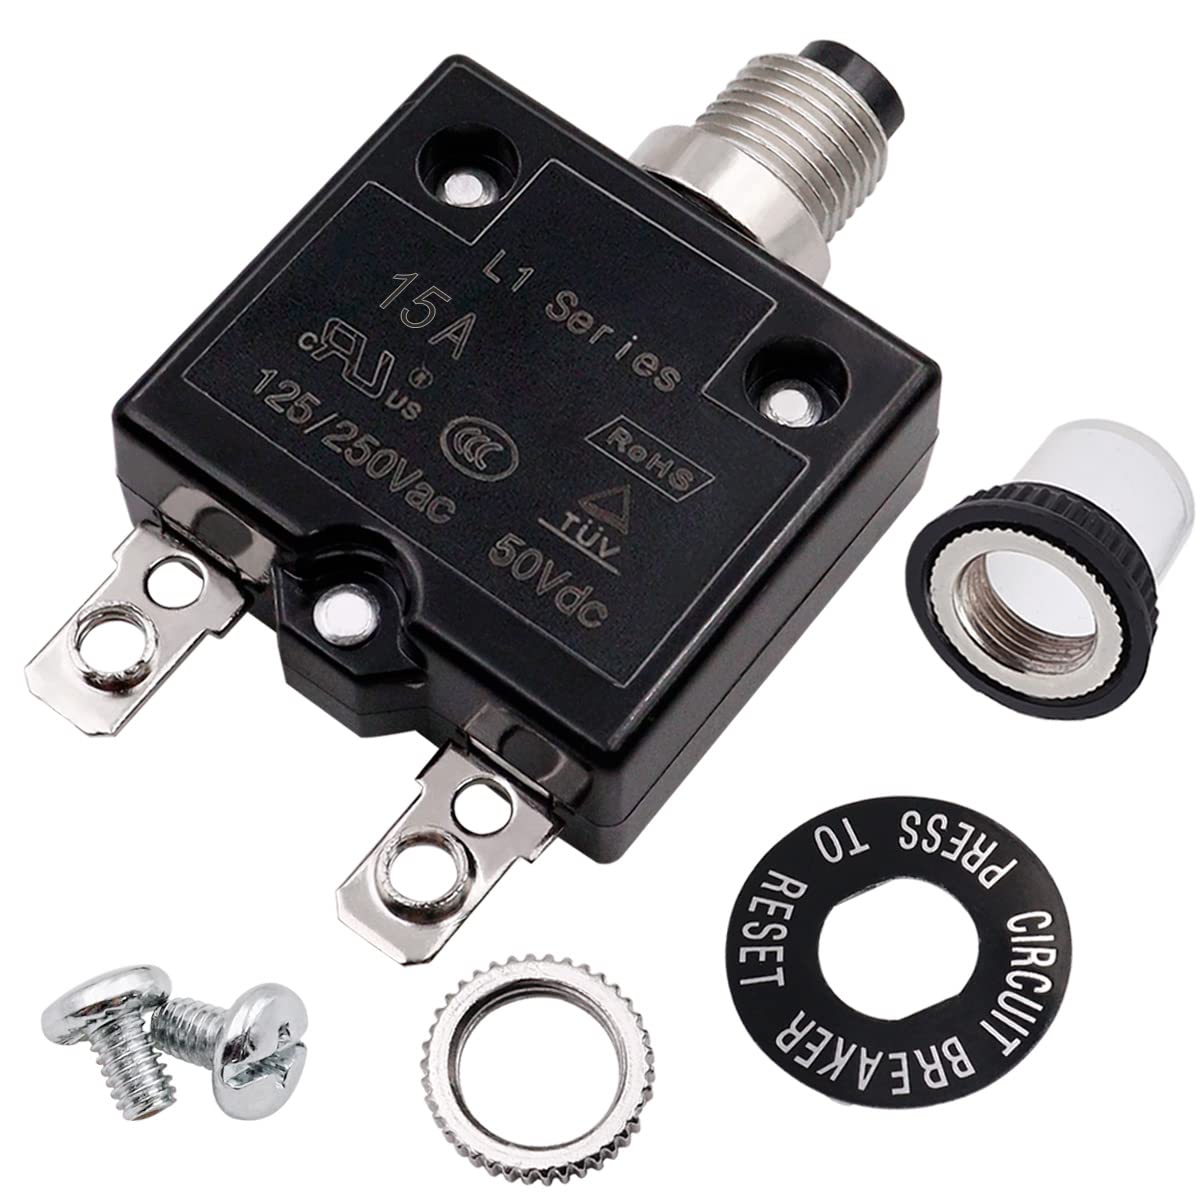 Interruptor de botón eléctrico de 15 amperios de 125/250 VAC, protector de sobrecarga térmica serie L1 con terminales de conexión rápida y tapa de botón impermeable L1-ls-15A